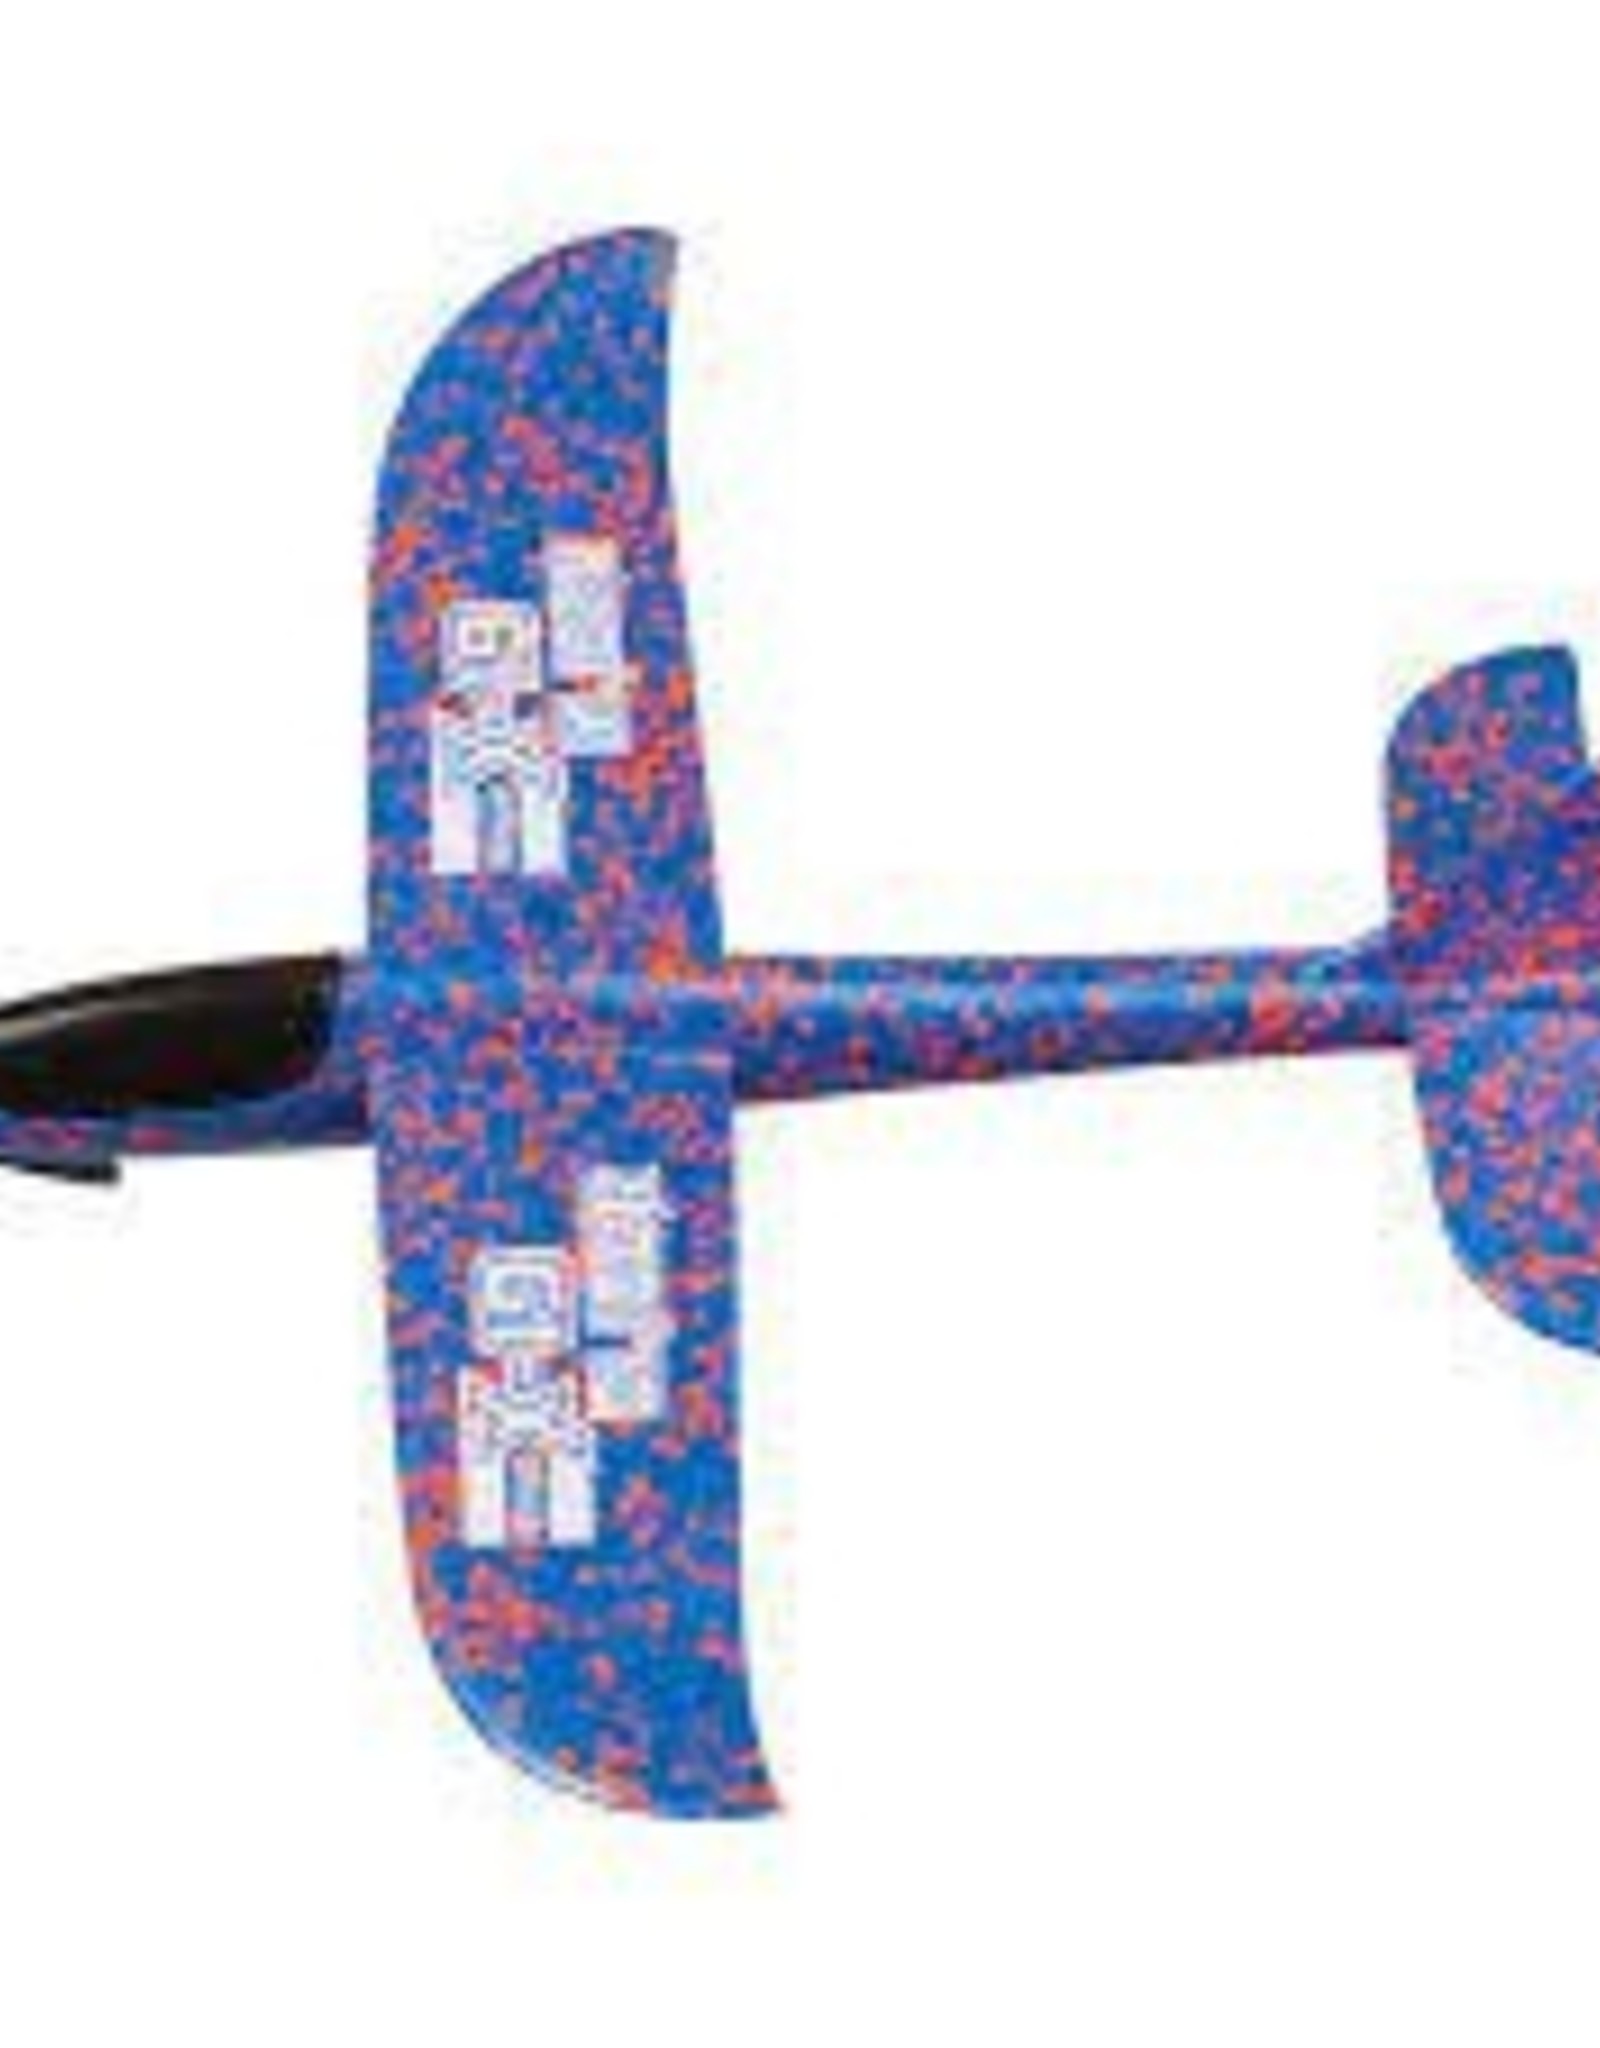 Duncan X-19 Glider